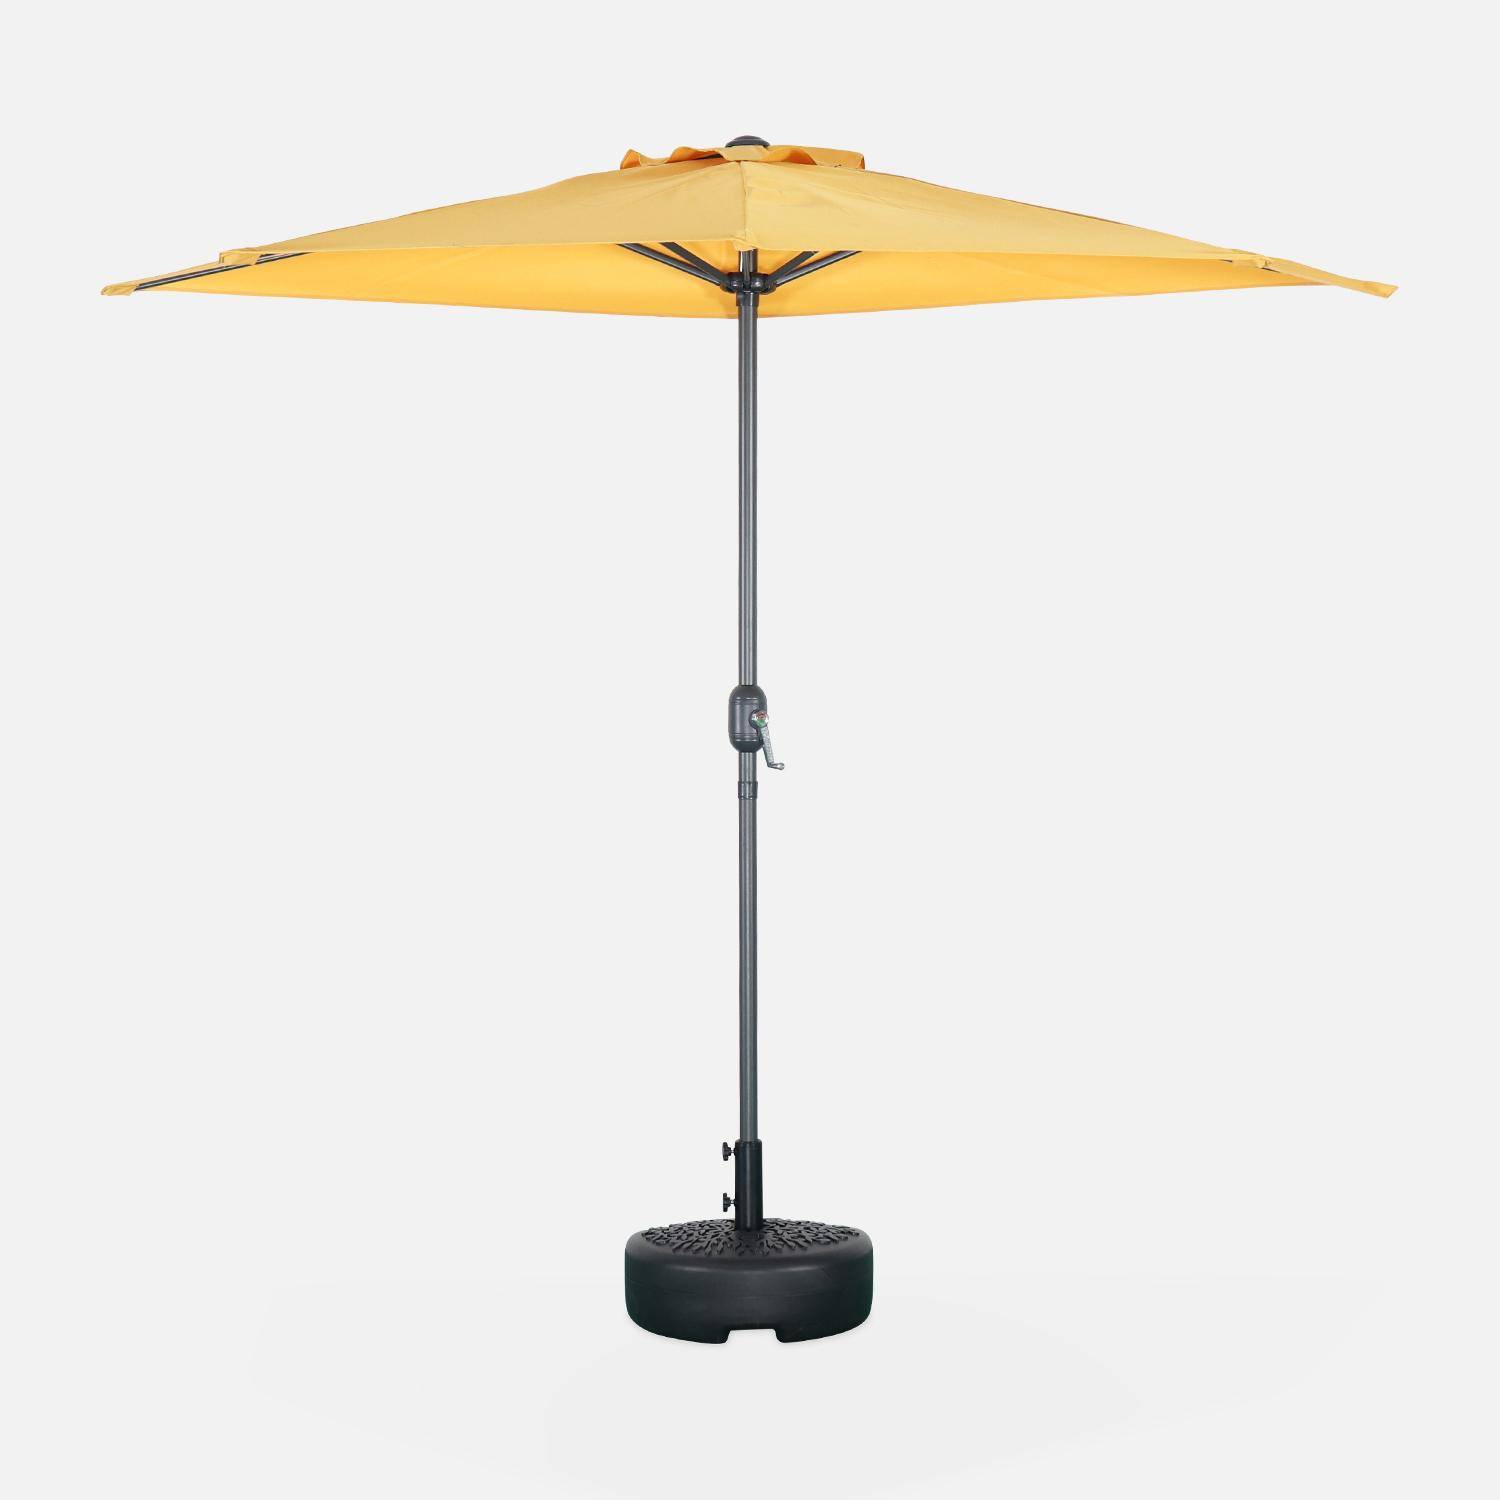  Parasol de balcon Ø250cm  – CALVI – Demi-parasol droit, mât en aluminium avec manivelle d’ouverture, toile moutarde Photo2